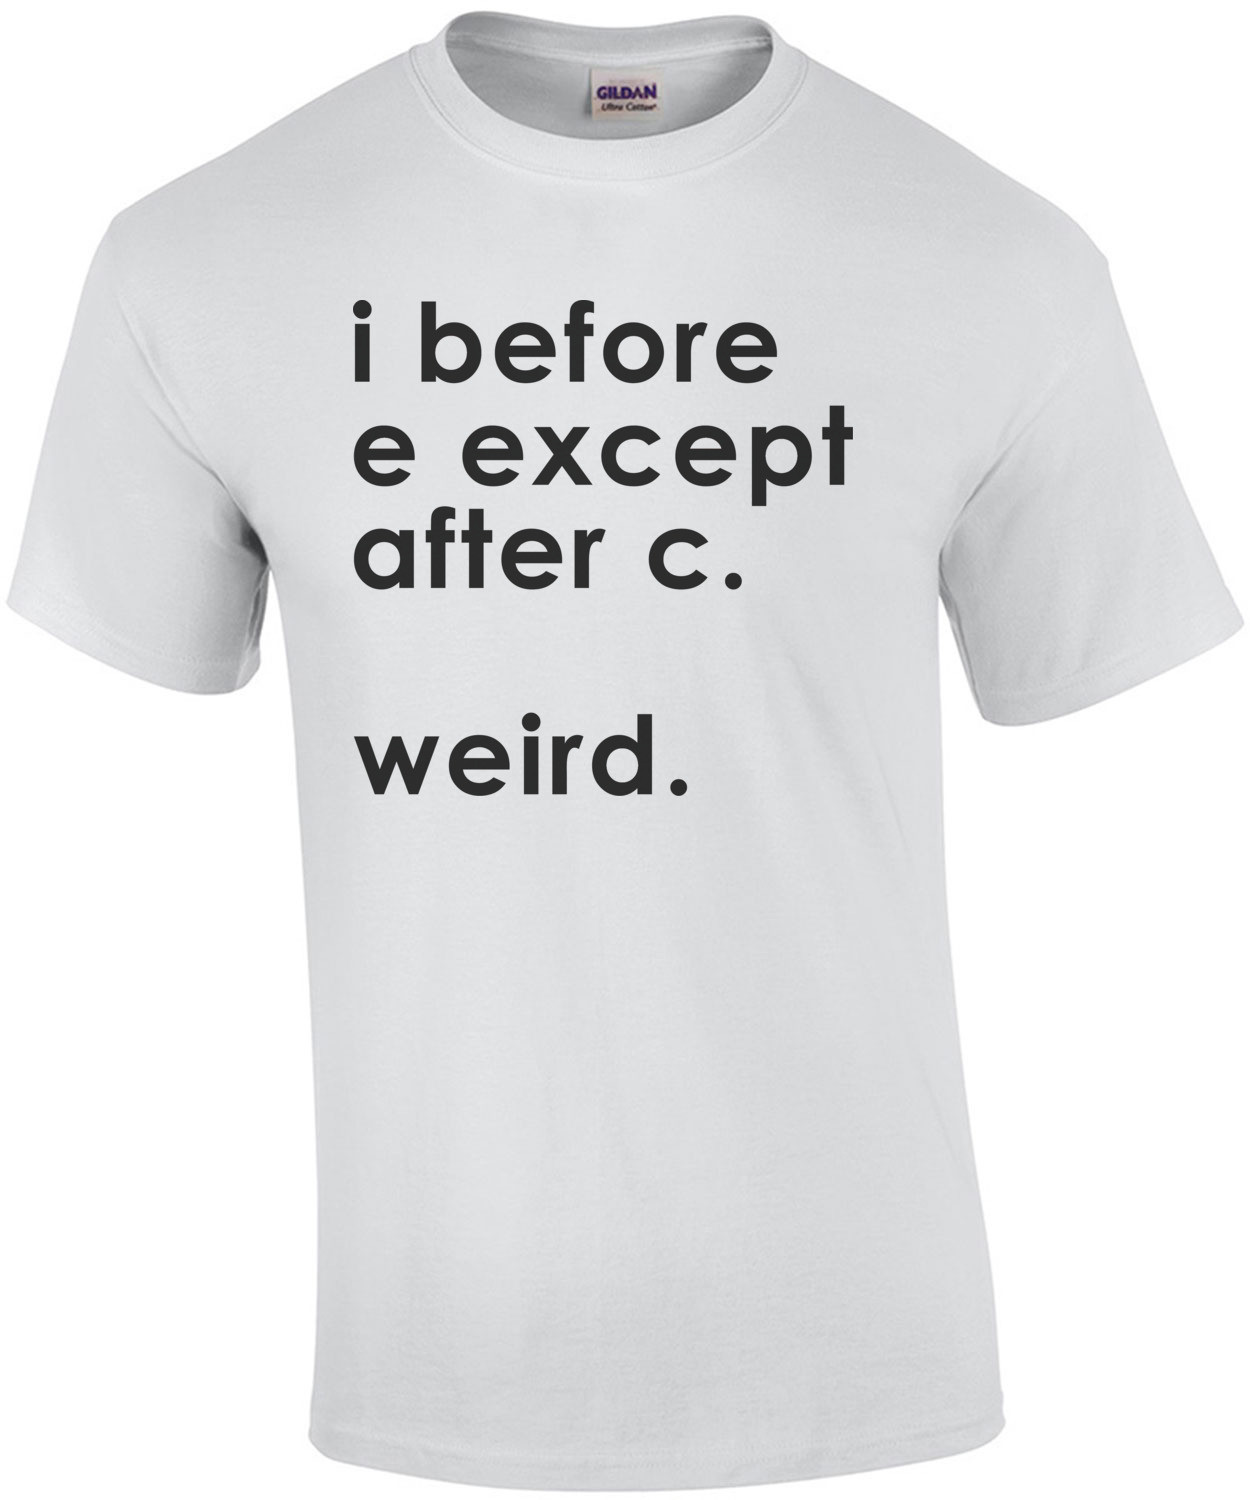 I before E except after C. Weird. T-Shirt